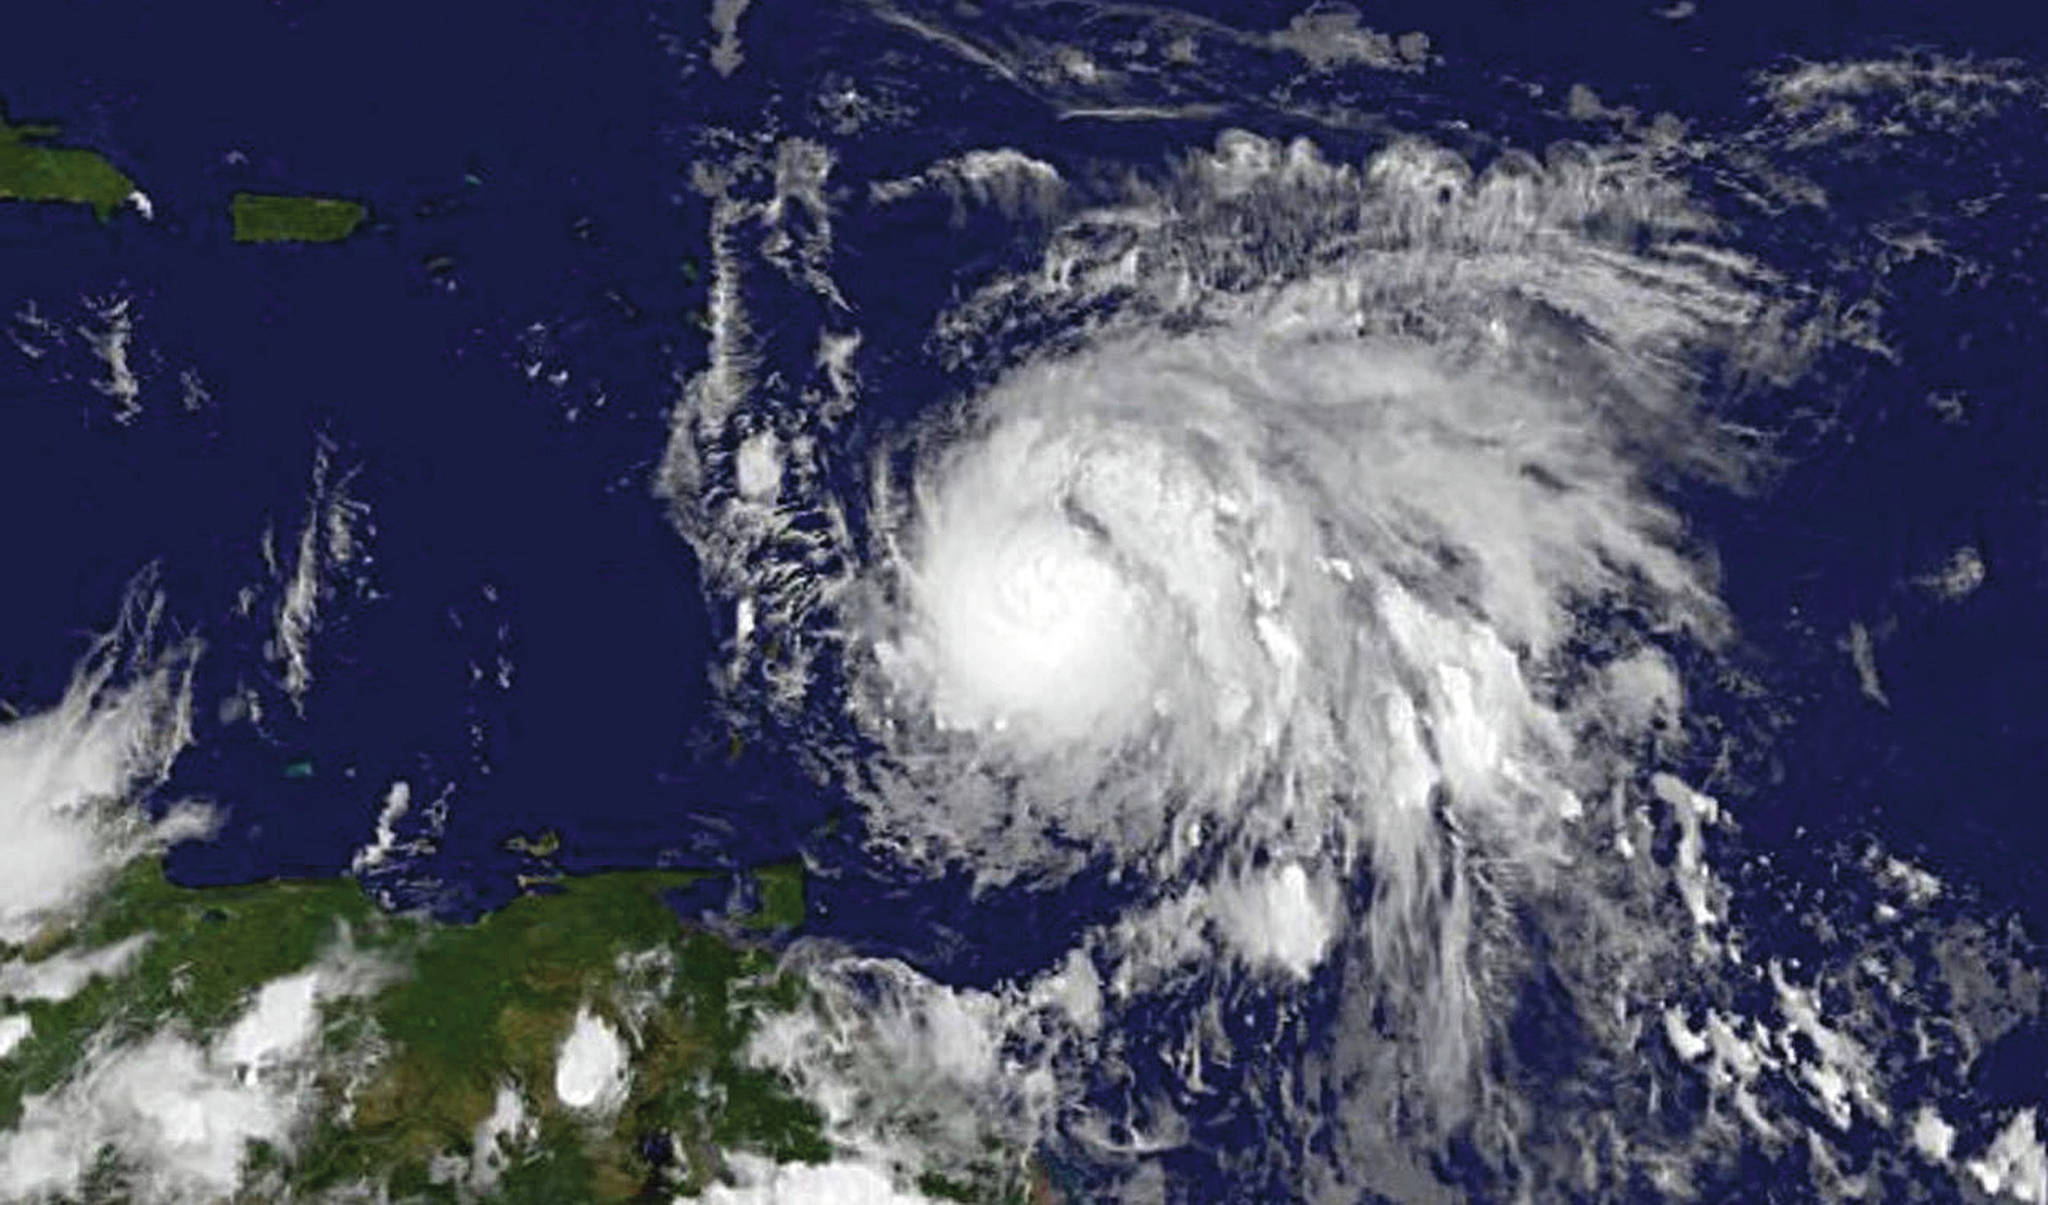 8561175_web1_170919-RDA-World-Hurricane-Maria-PIC